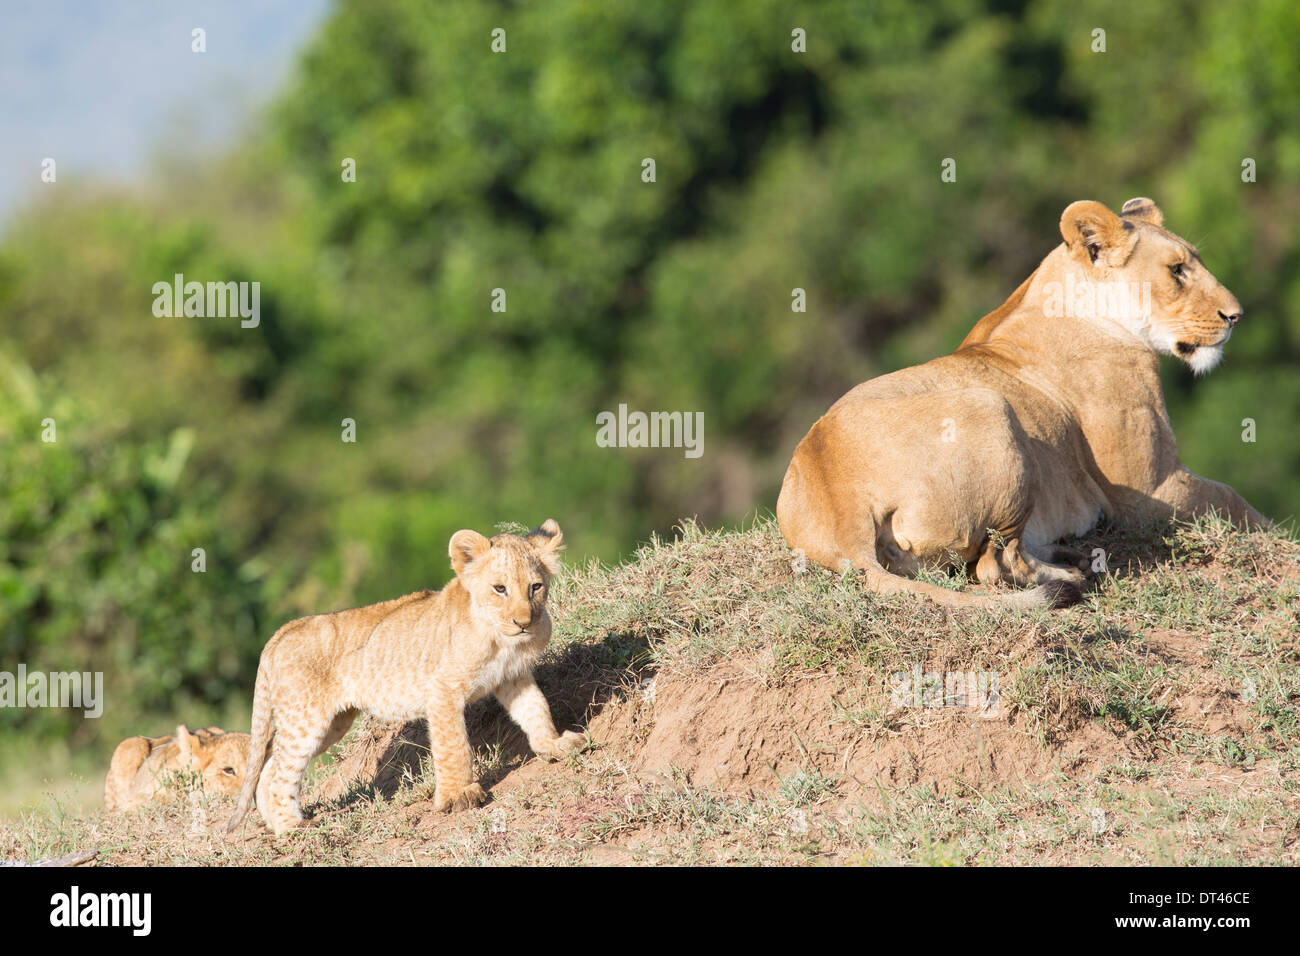 Próxima generación 2014 del famoso león Marsh el orgullo de los Maasai Mara de Kenia (Panthera leo) Foto de stock